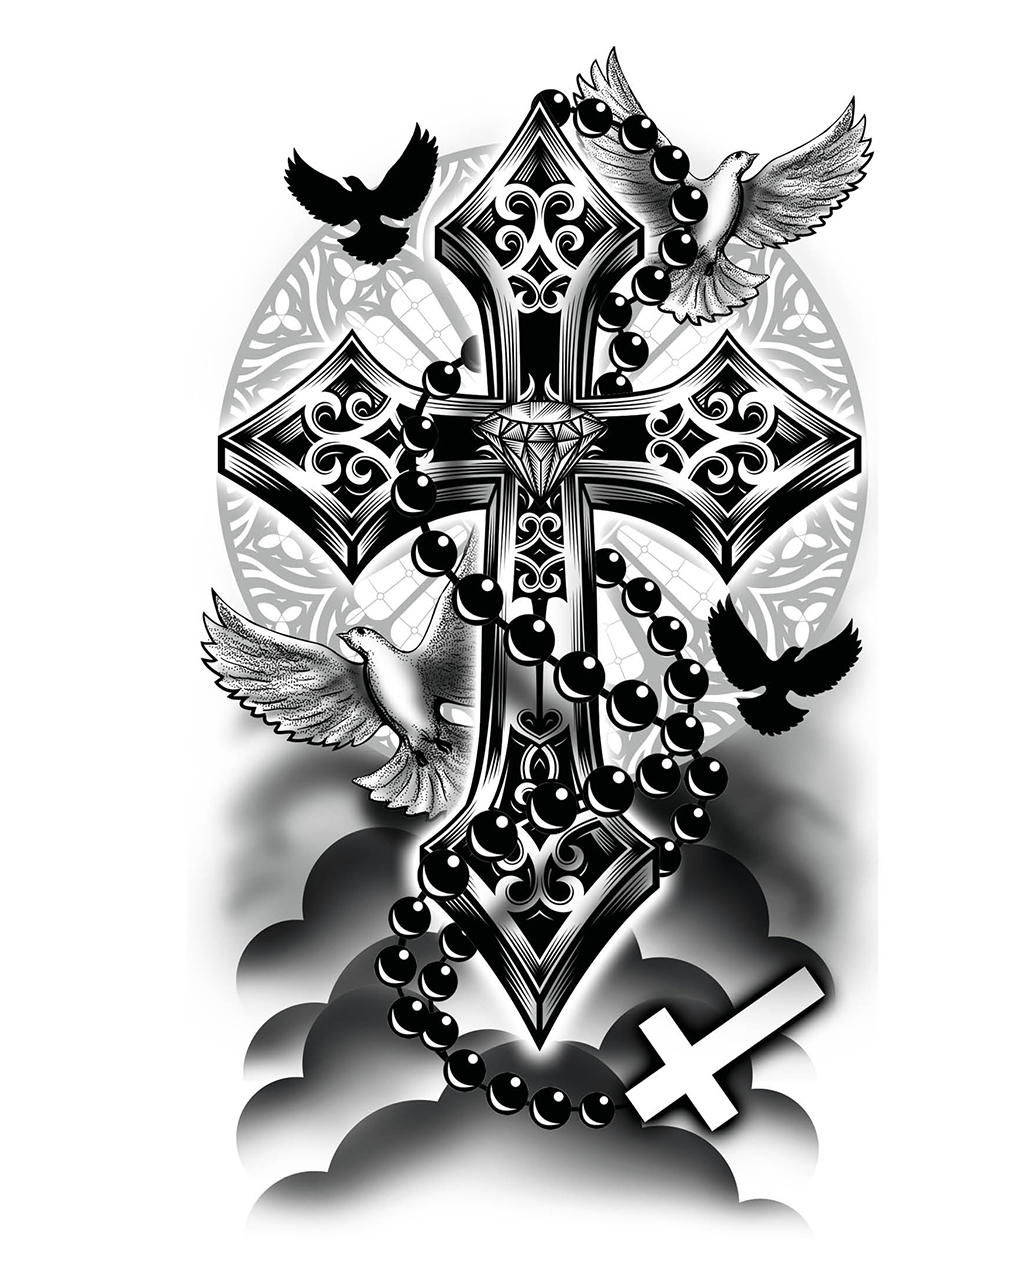 https://inst-0.cdn.shockers.de/ku_cdn/out/pictures/master/product/2/temporaeres-kreuz-rosenkranz-tattoo-zum-aufkleben-temporary-cross-rosary-tattoo-to-stick-on-klebetattoo-realistisch-56183-2_1.jpg